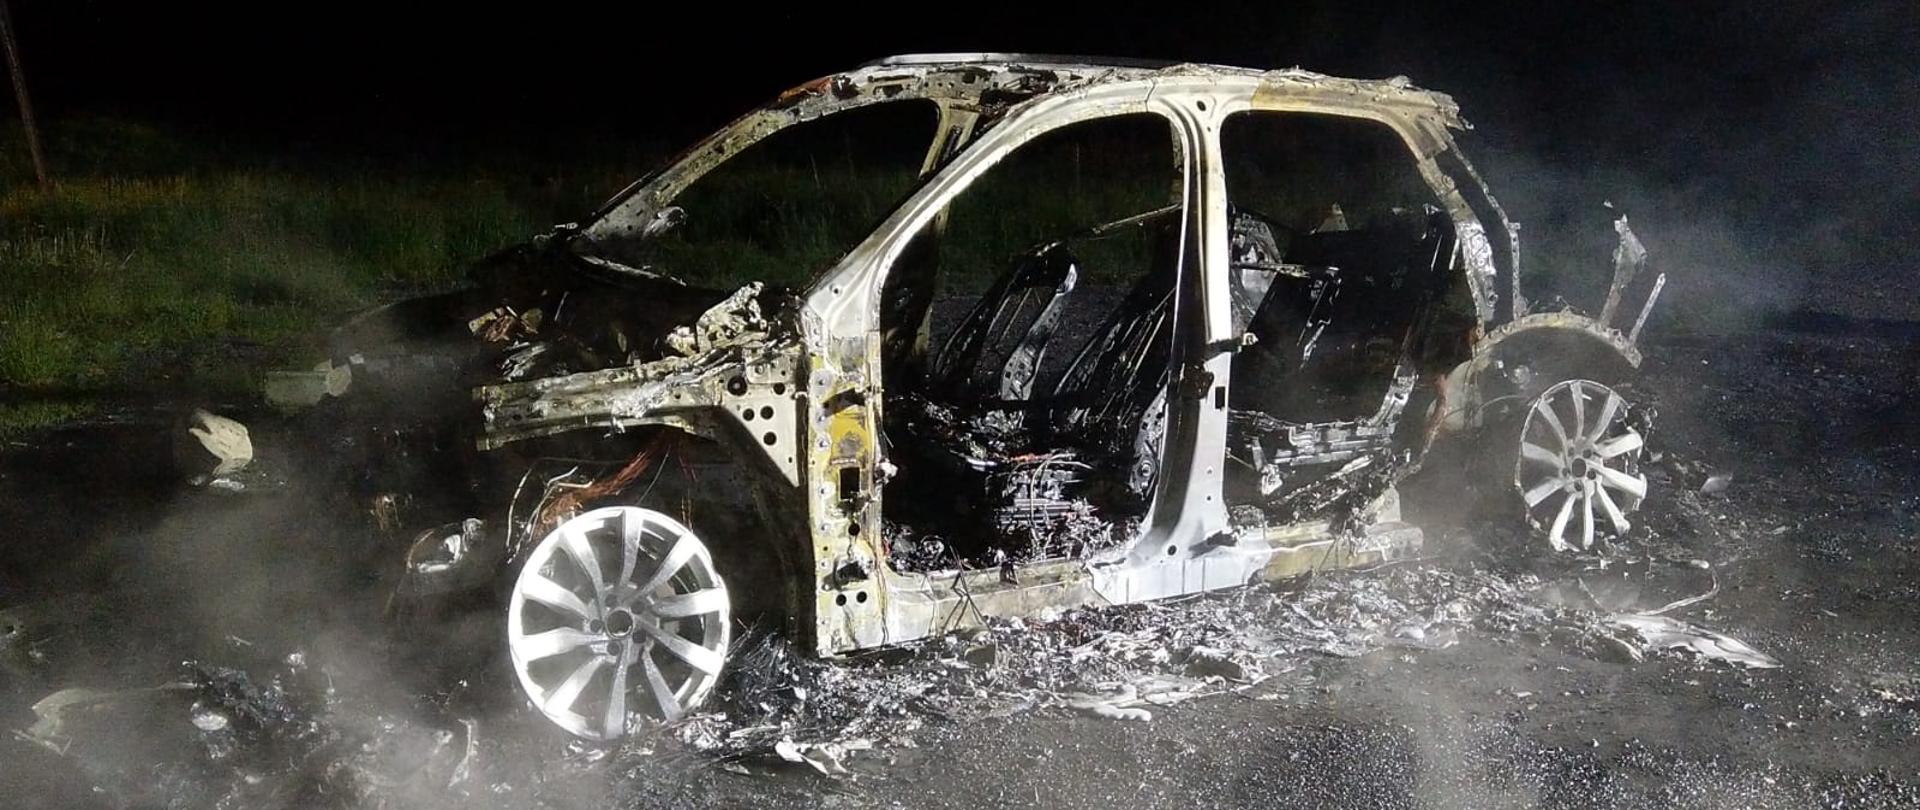 Na zdjęciu widać spalony samochód